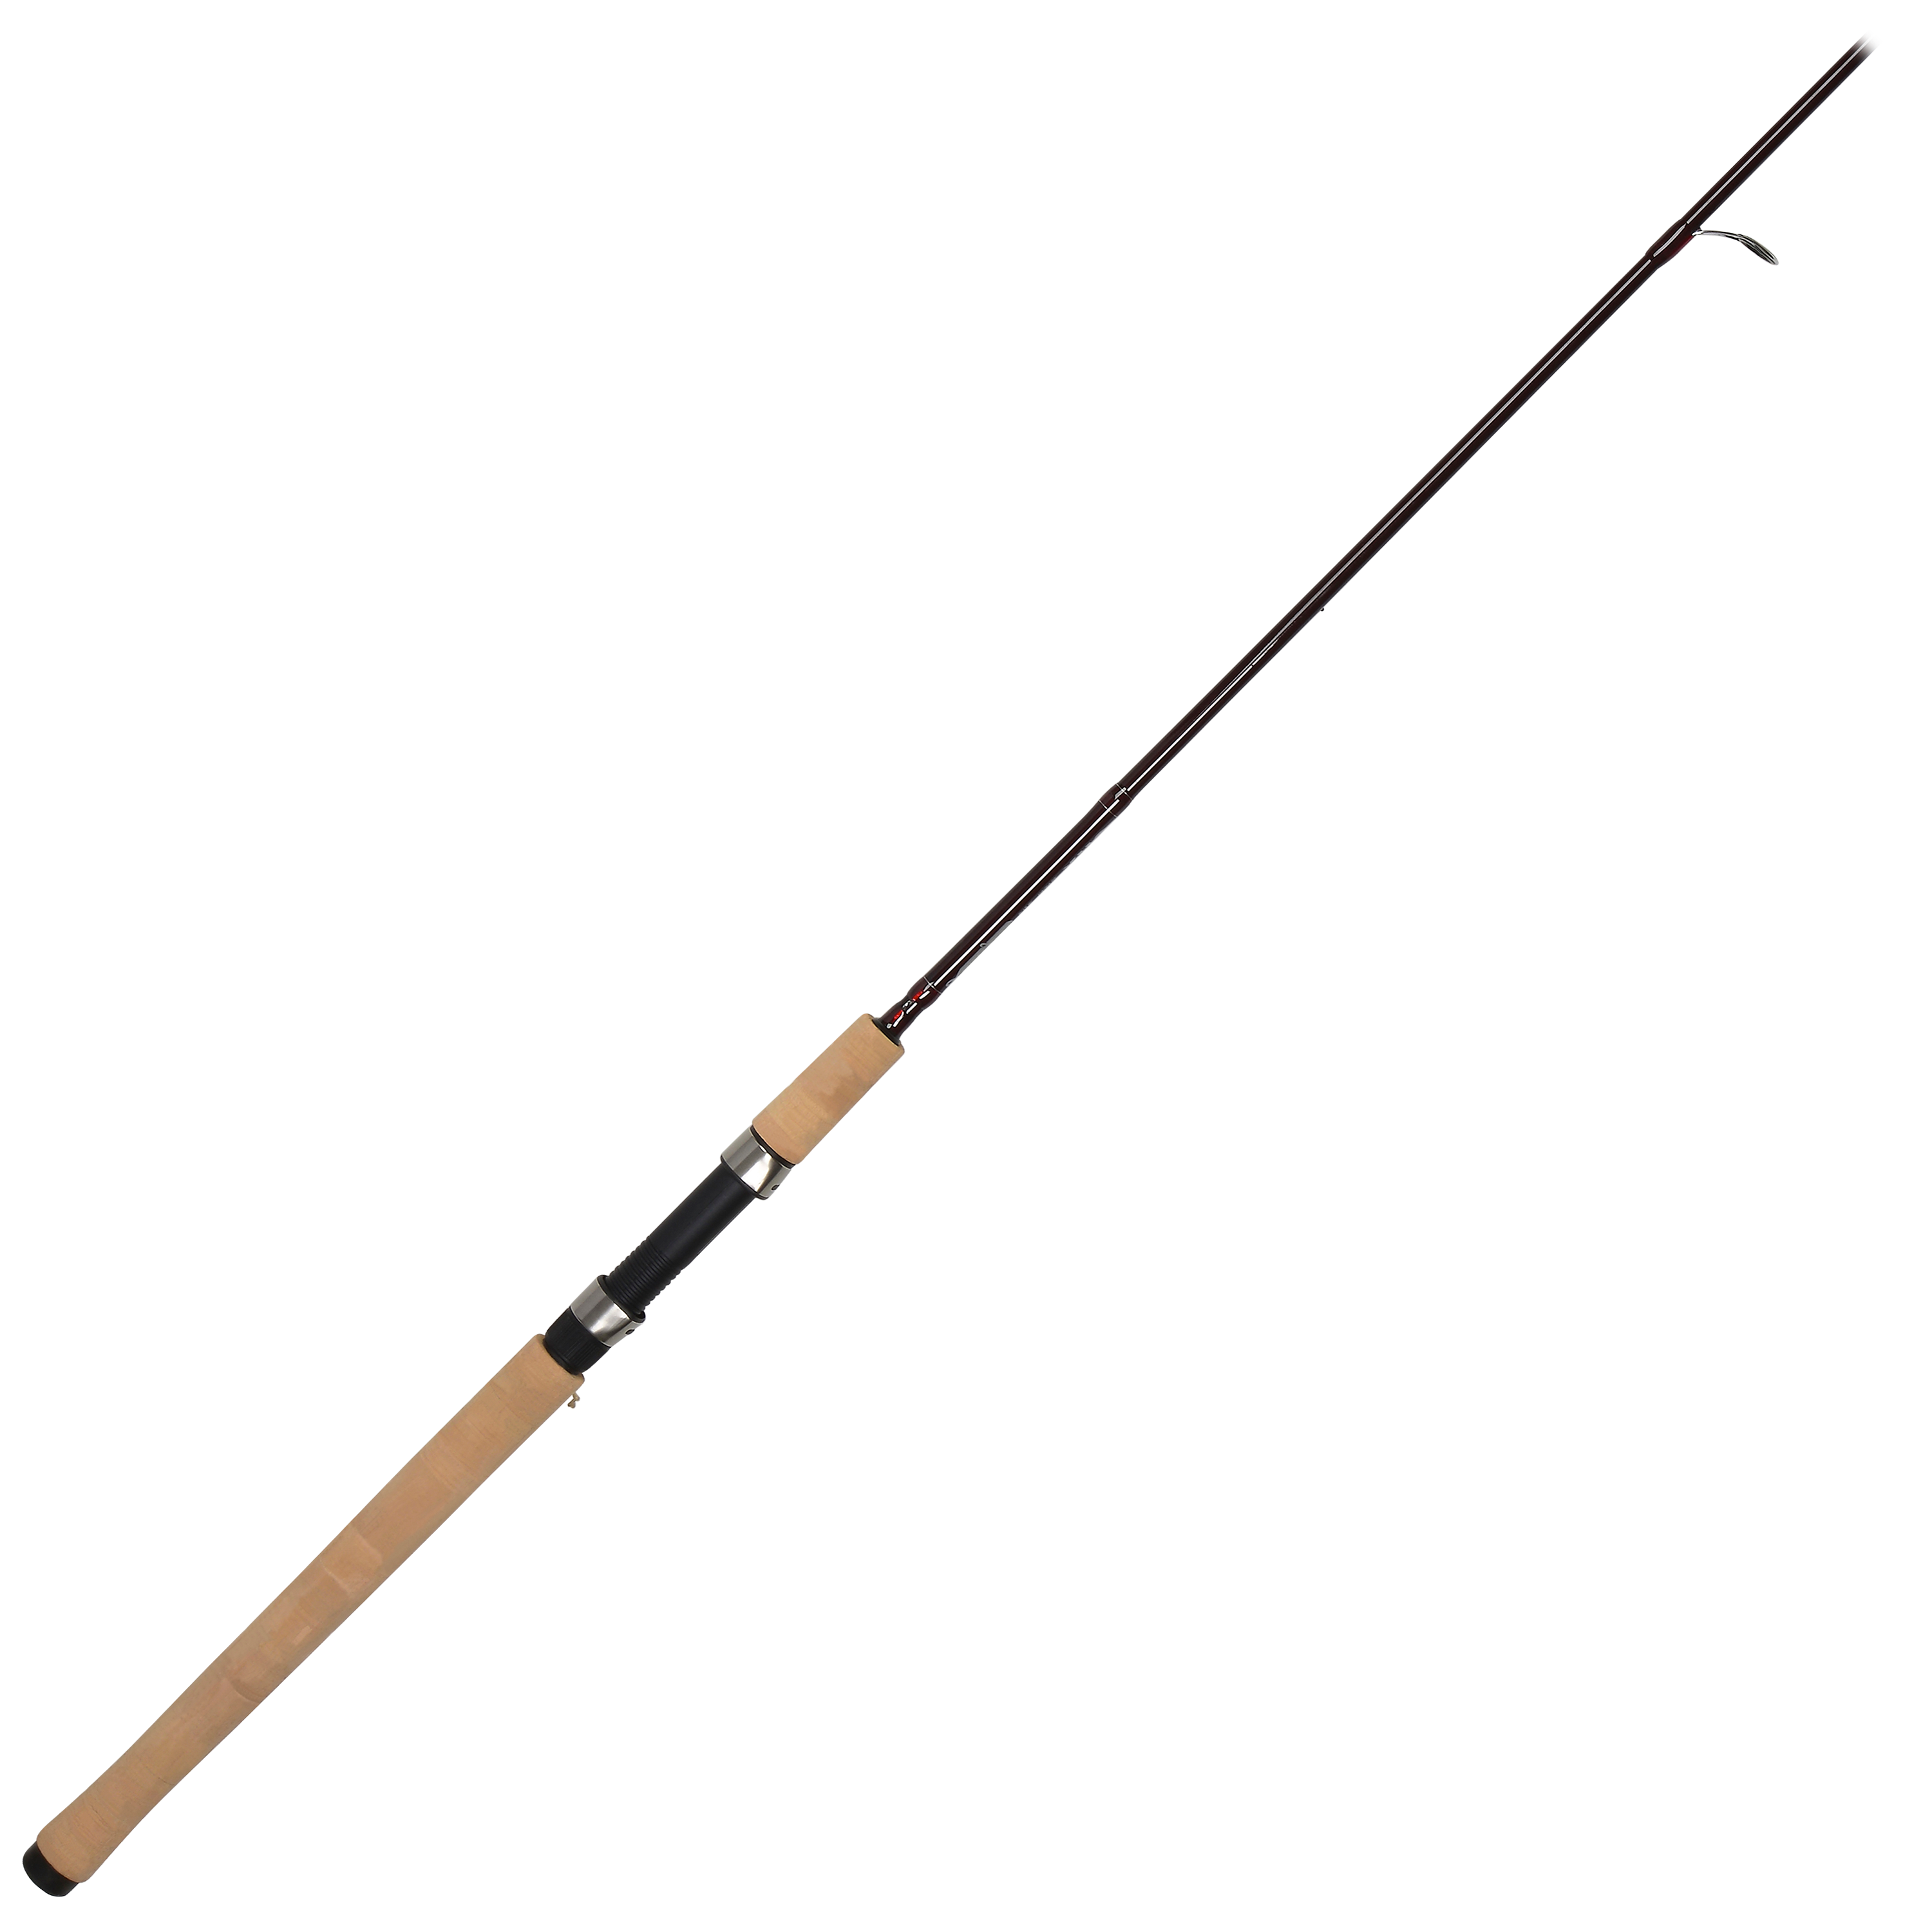 Fenwick HMX salmon/steelhead rod - sporting goods - by owner